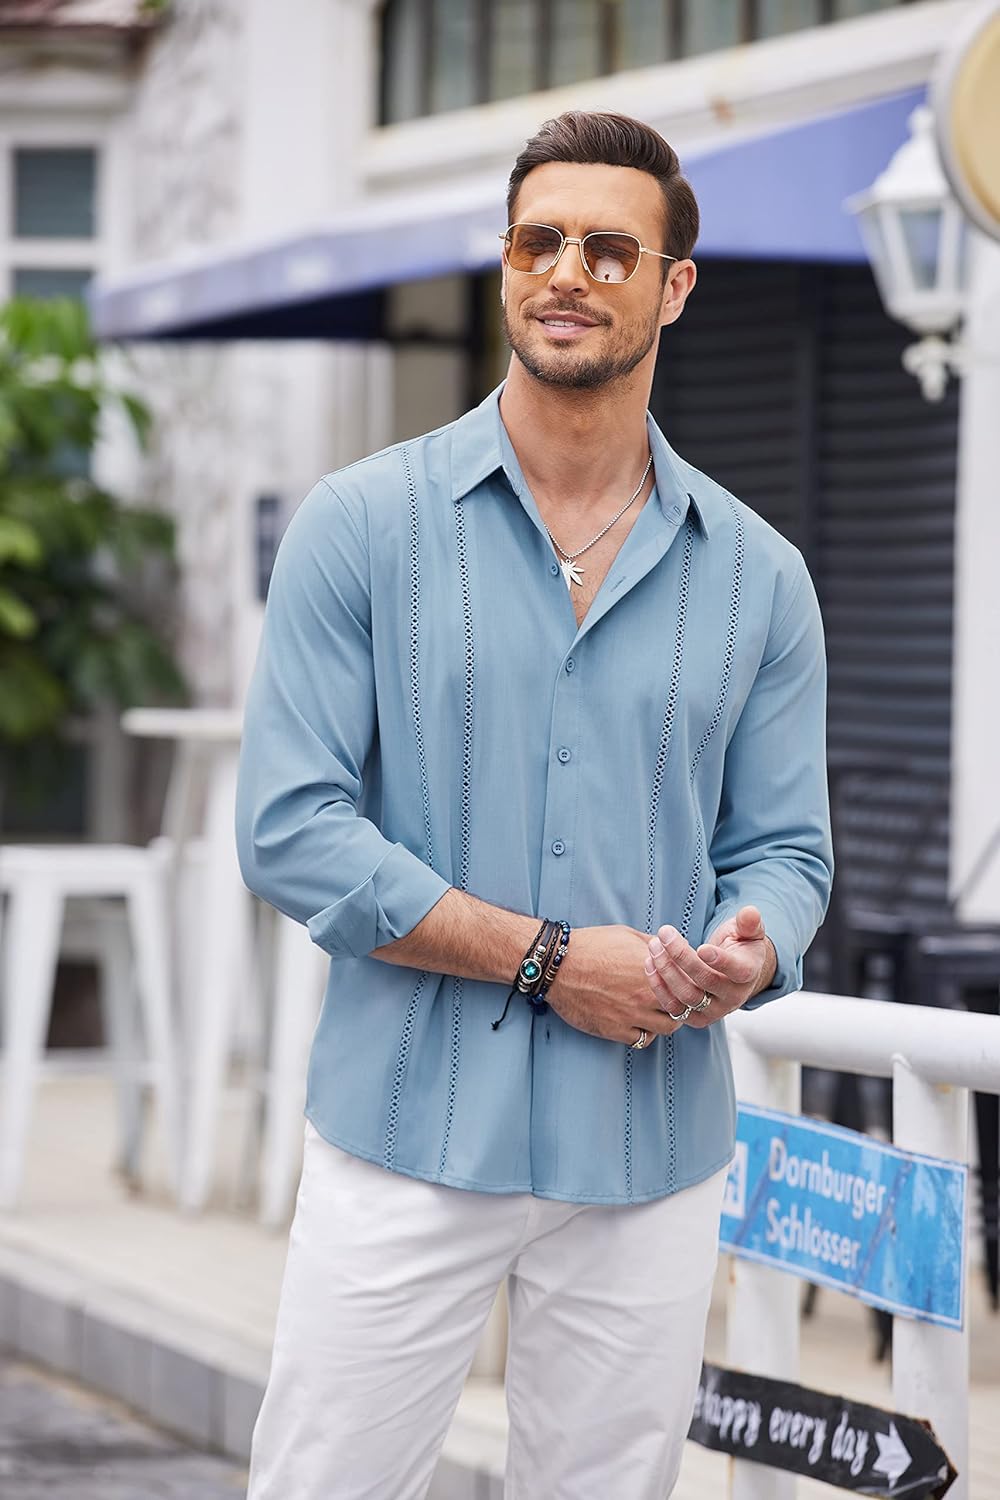 COOFANDY Mens Cuban Guayabera Shirt Casual Button Down Shirts Long Sleeve Beach Linen Shirts